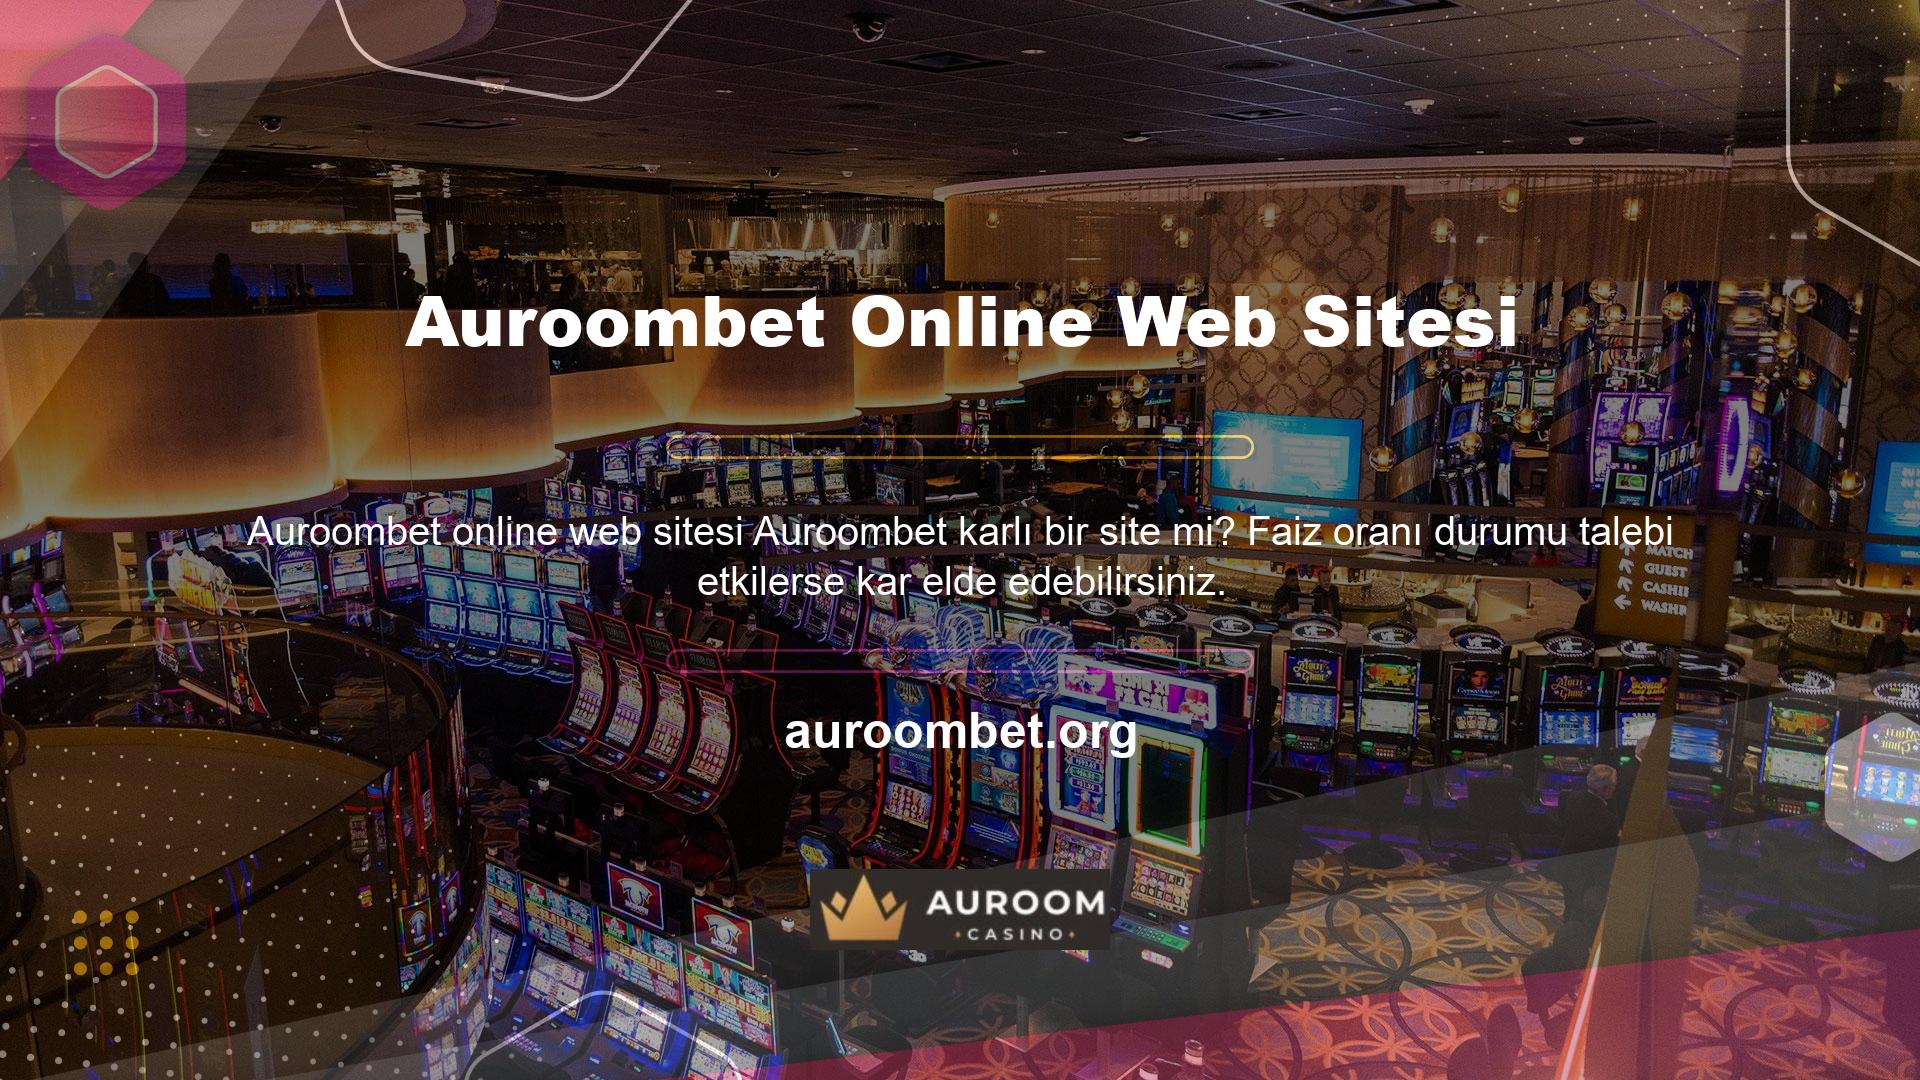 Çevrimiçi Siteler: Çevrimiçi bahis siteleri, en iyi casinolar ve spor bahis oyunları için en iyi oranları bulacağınız yerdir